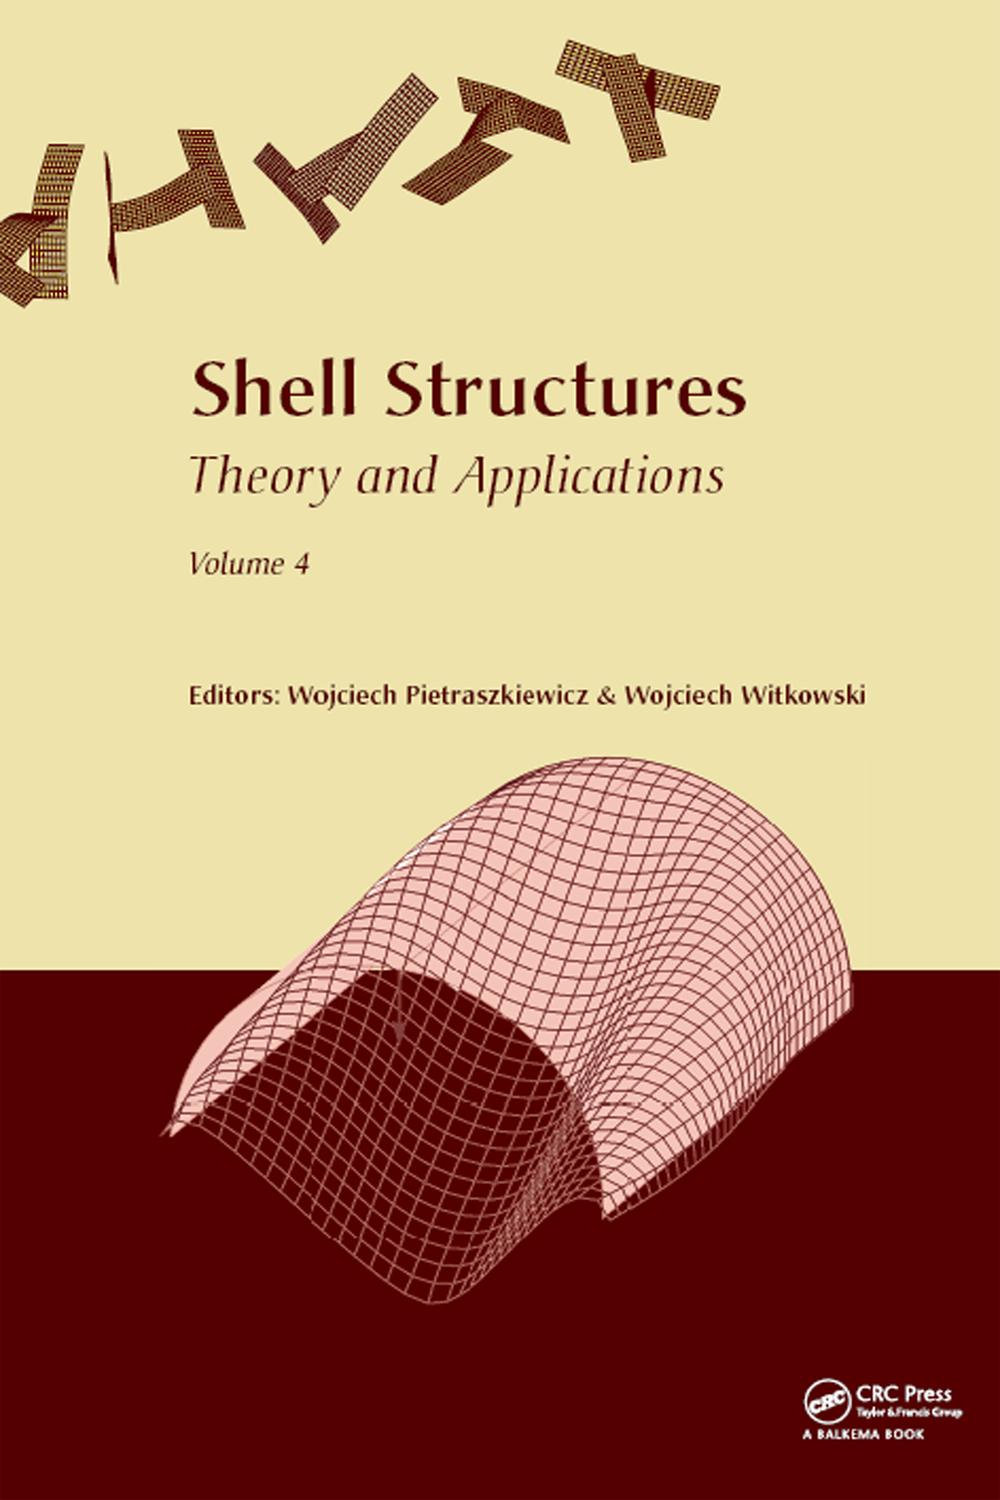 Shell Structures: Theory and Applications Volume 4 - Wojciech Pietraszkiewicz, Wojciech Witkowski